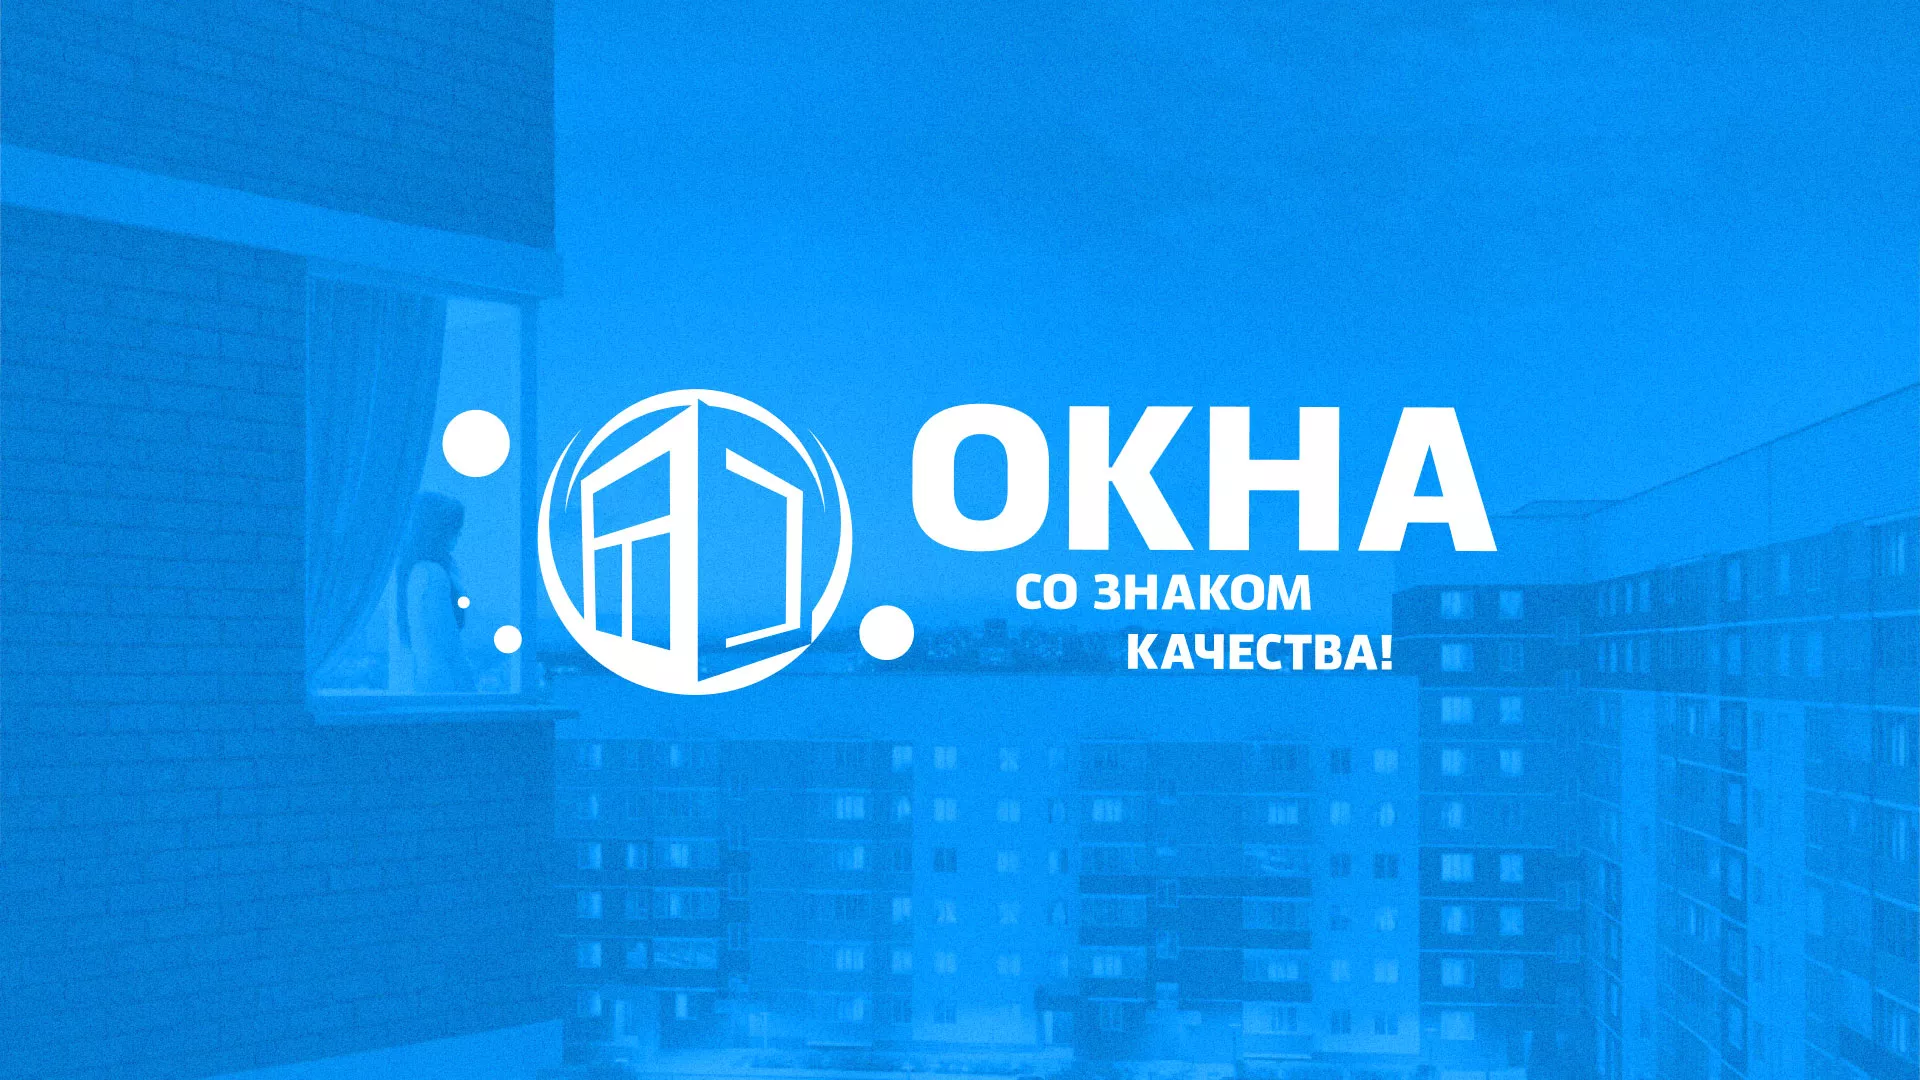 Создание сайта компании «Окна ВИДО» в Обнинске